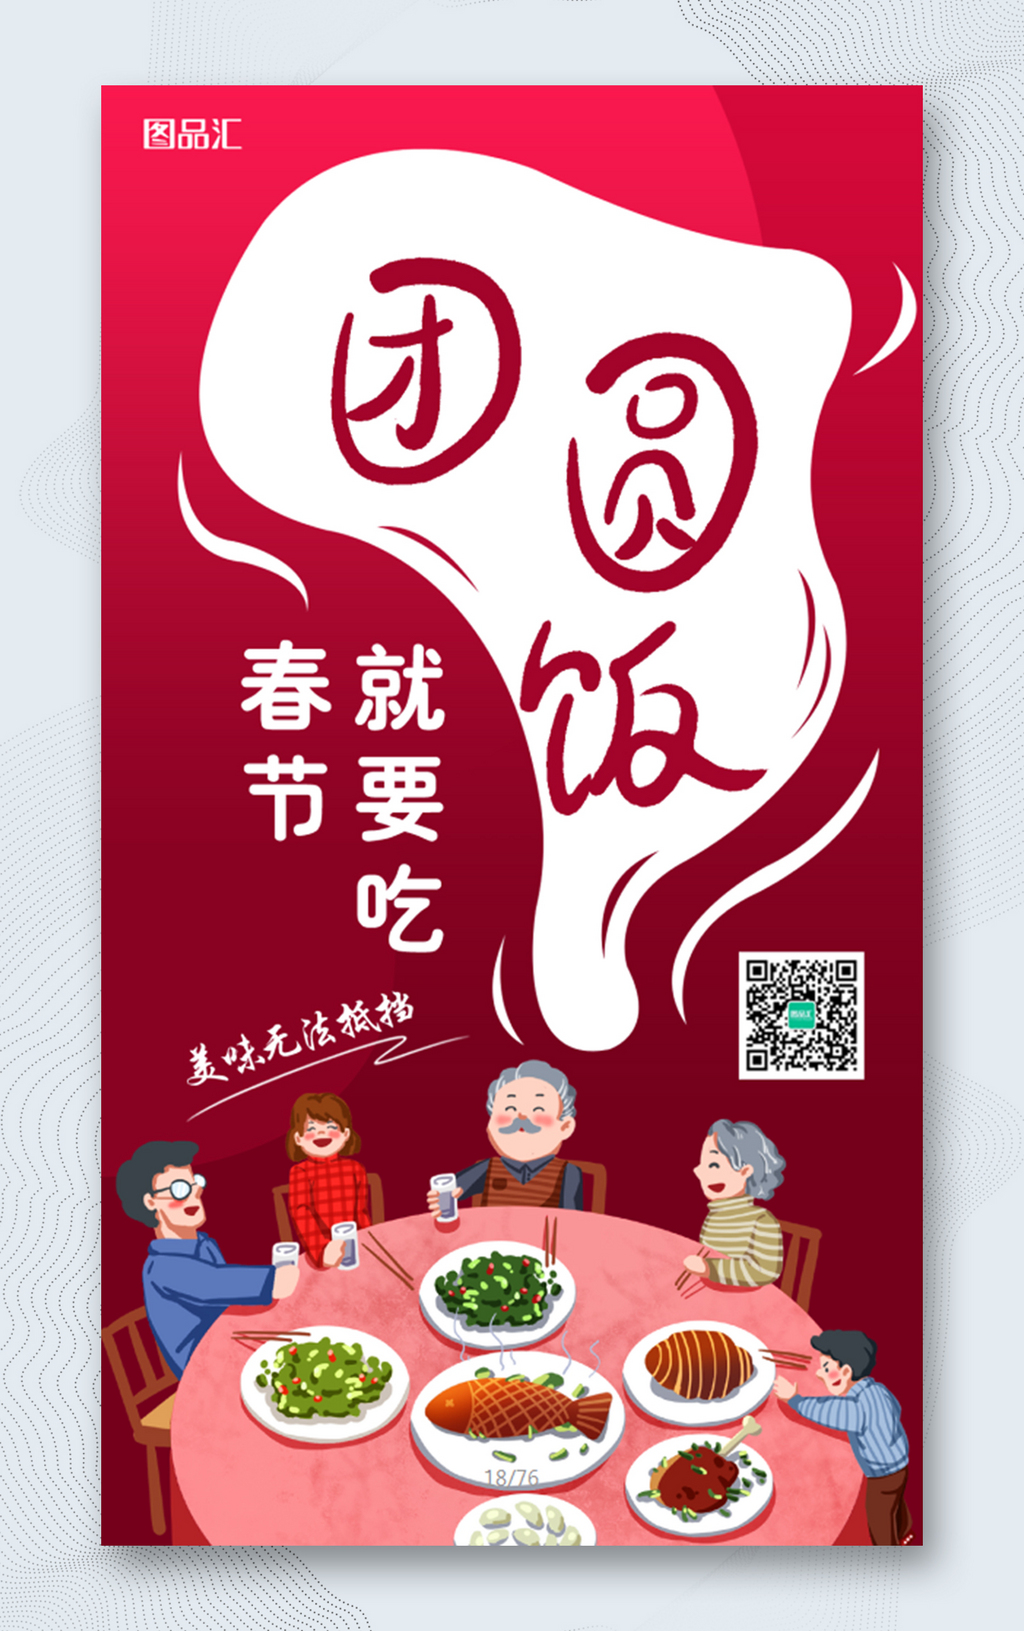  春节年夜饭团圆海报